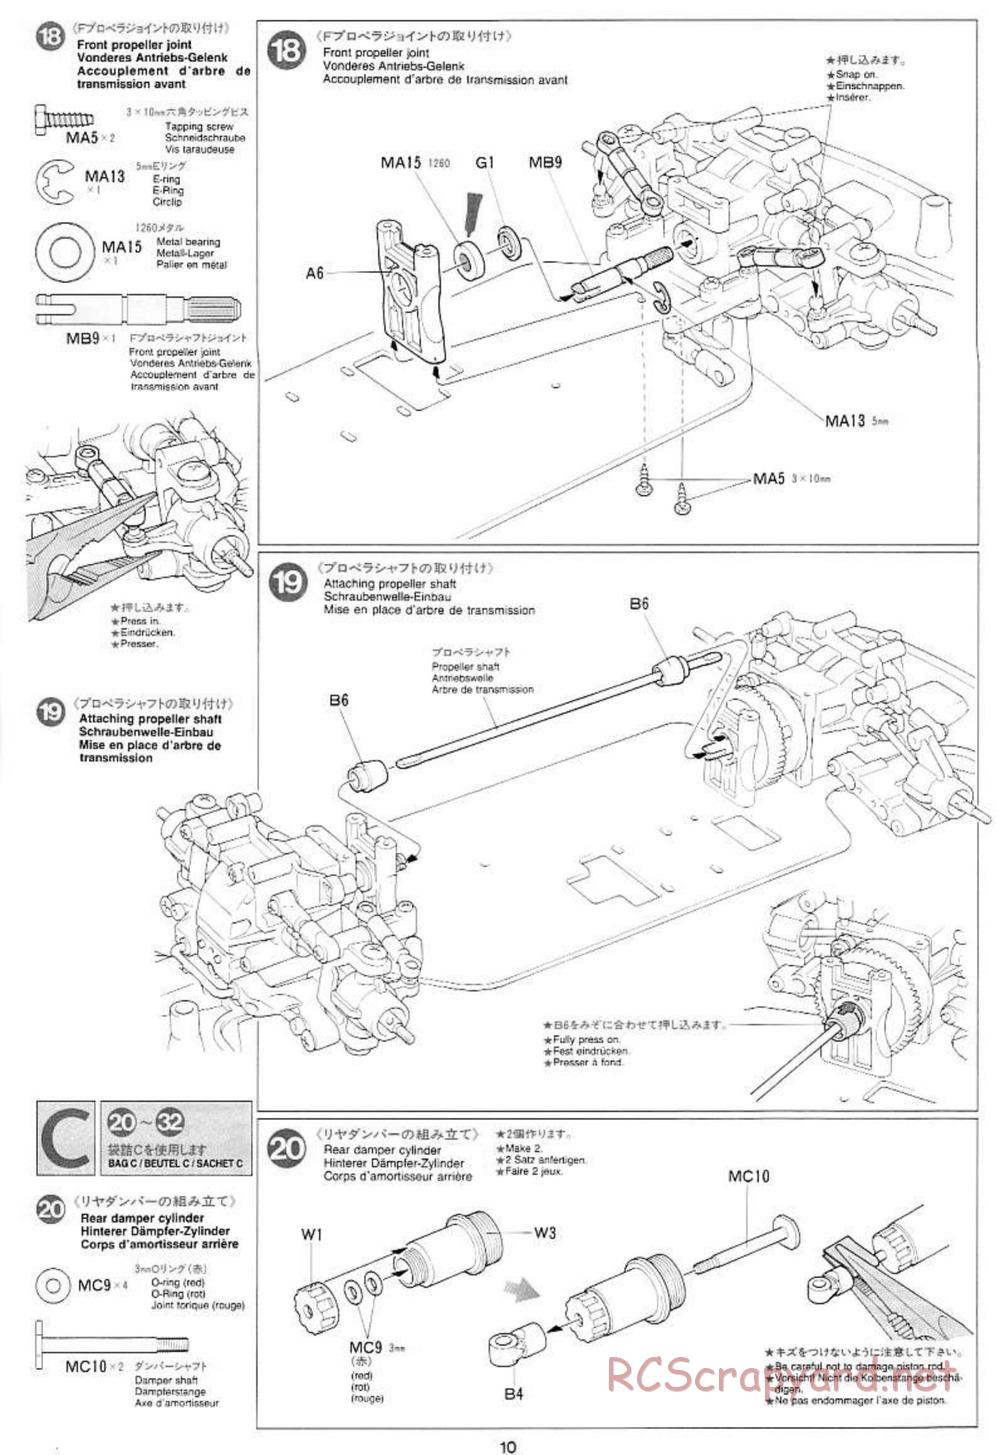 Tamiya - Mercedes CLK GTR Team Sportswear - TG10 Mk.1 Chassis - Manual - Page 10